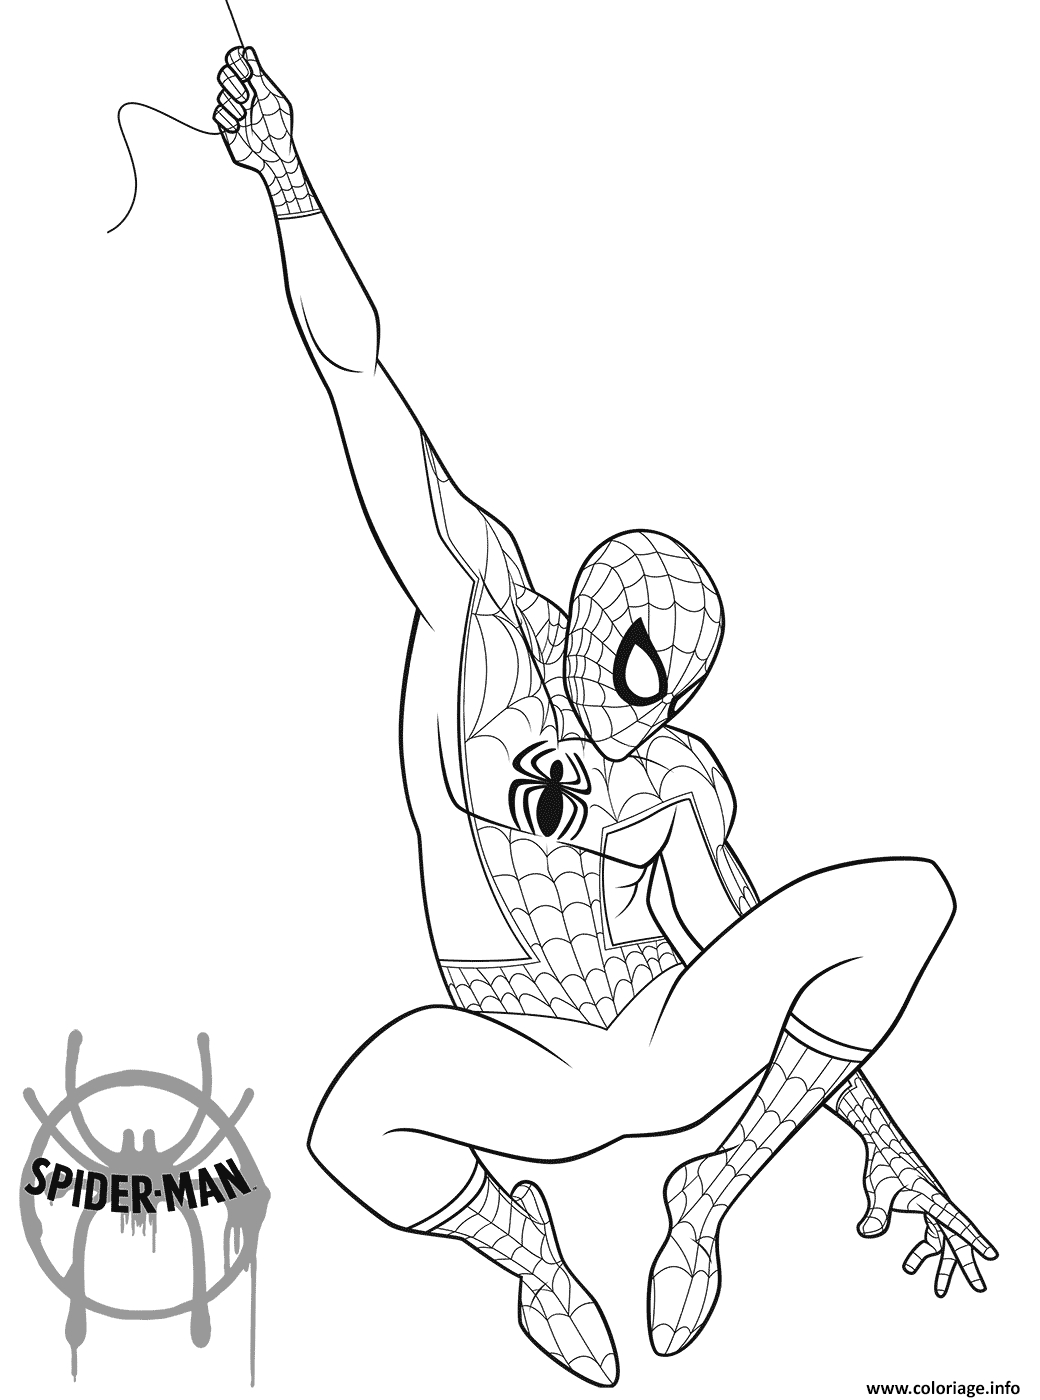 Coloriage Spider Man 2018 - Jecolorie destiné Spiderman À Colorier À Imprimer